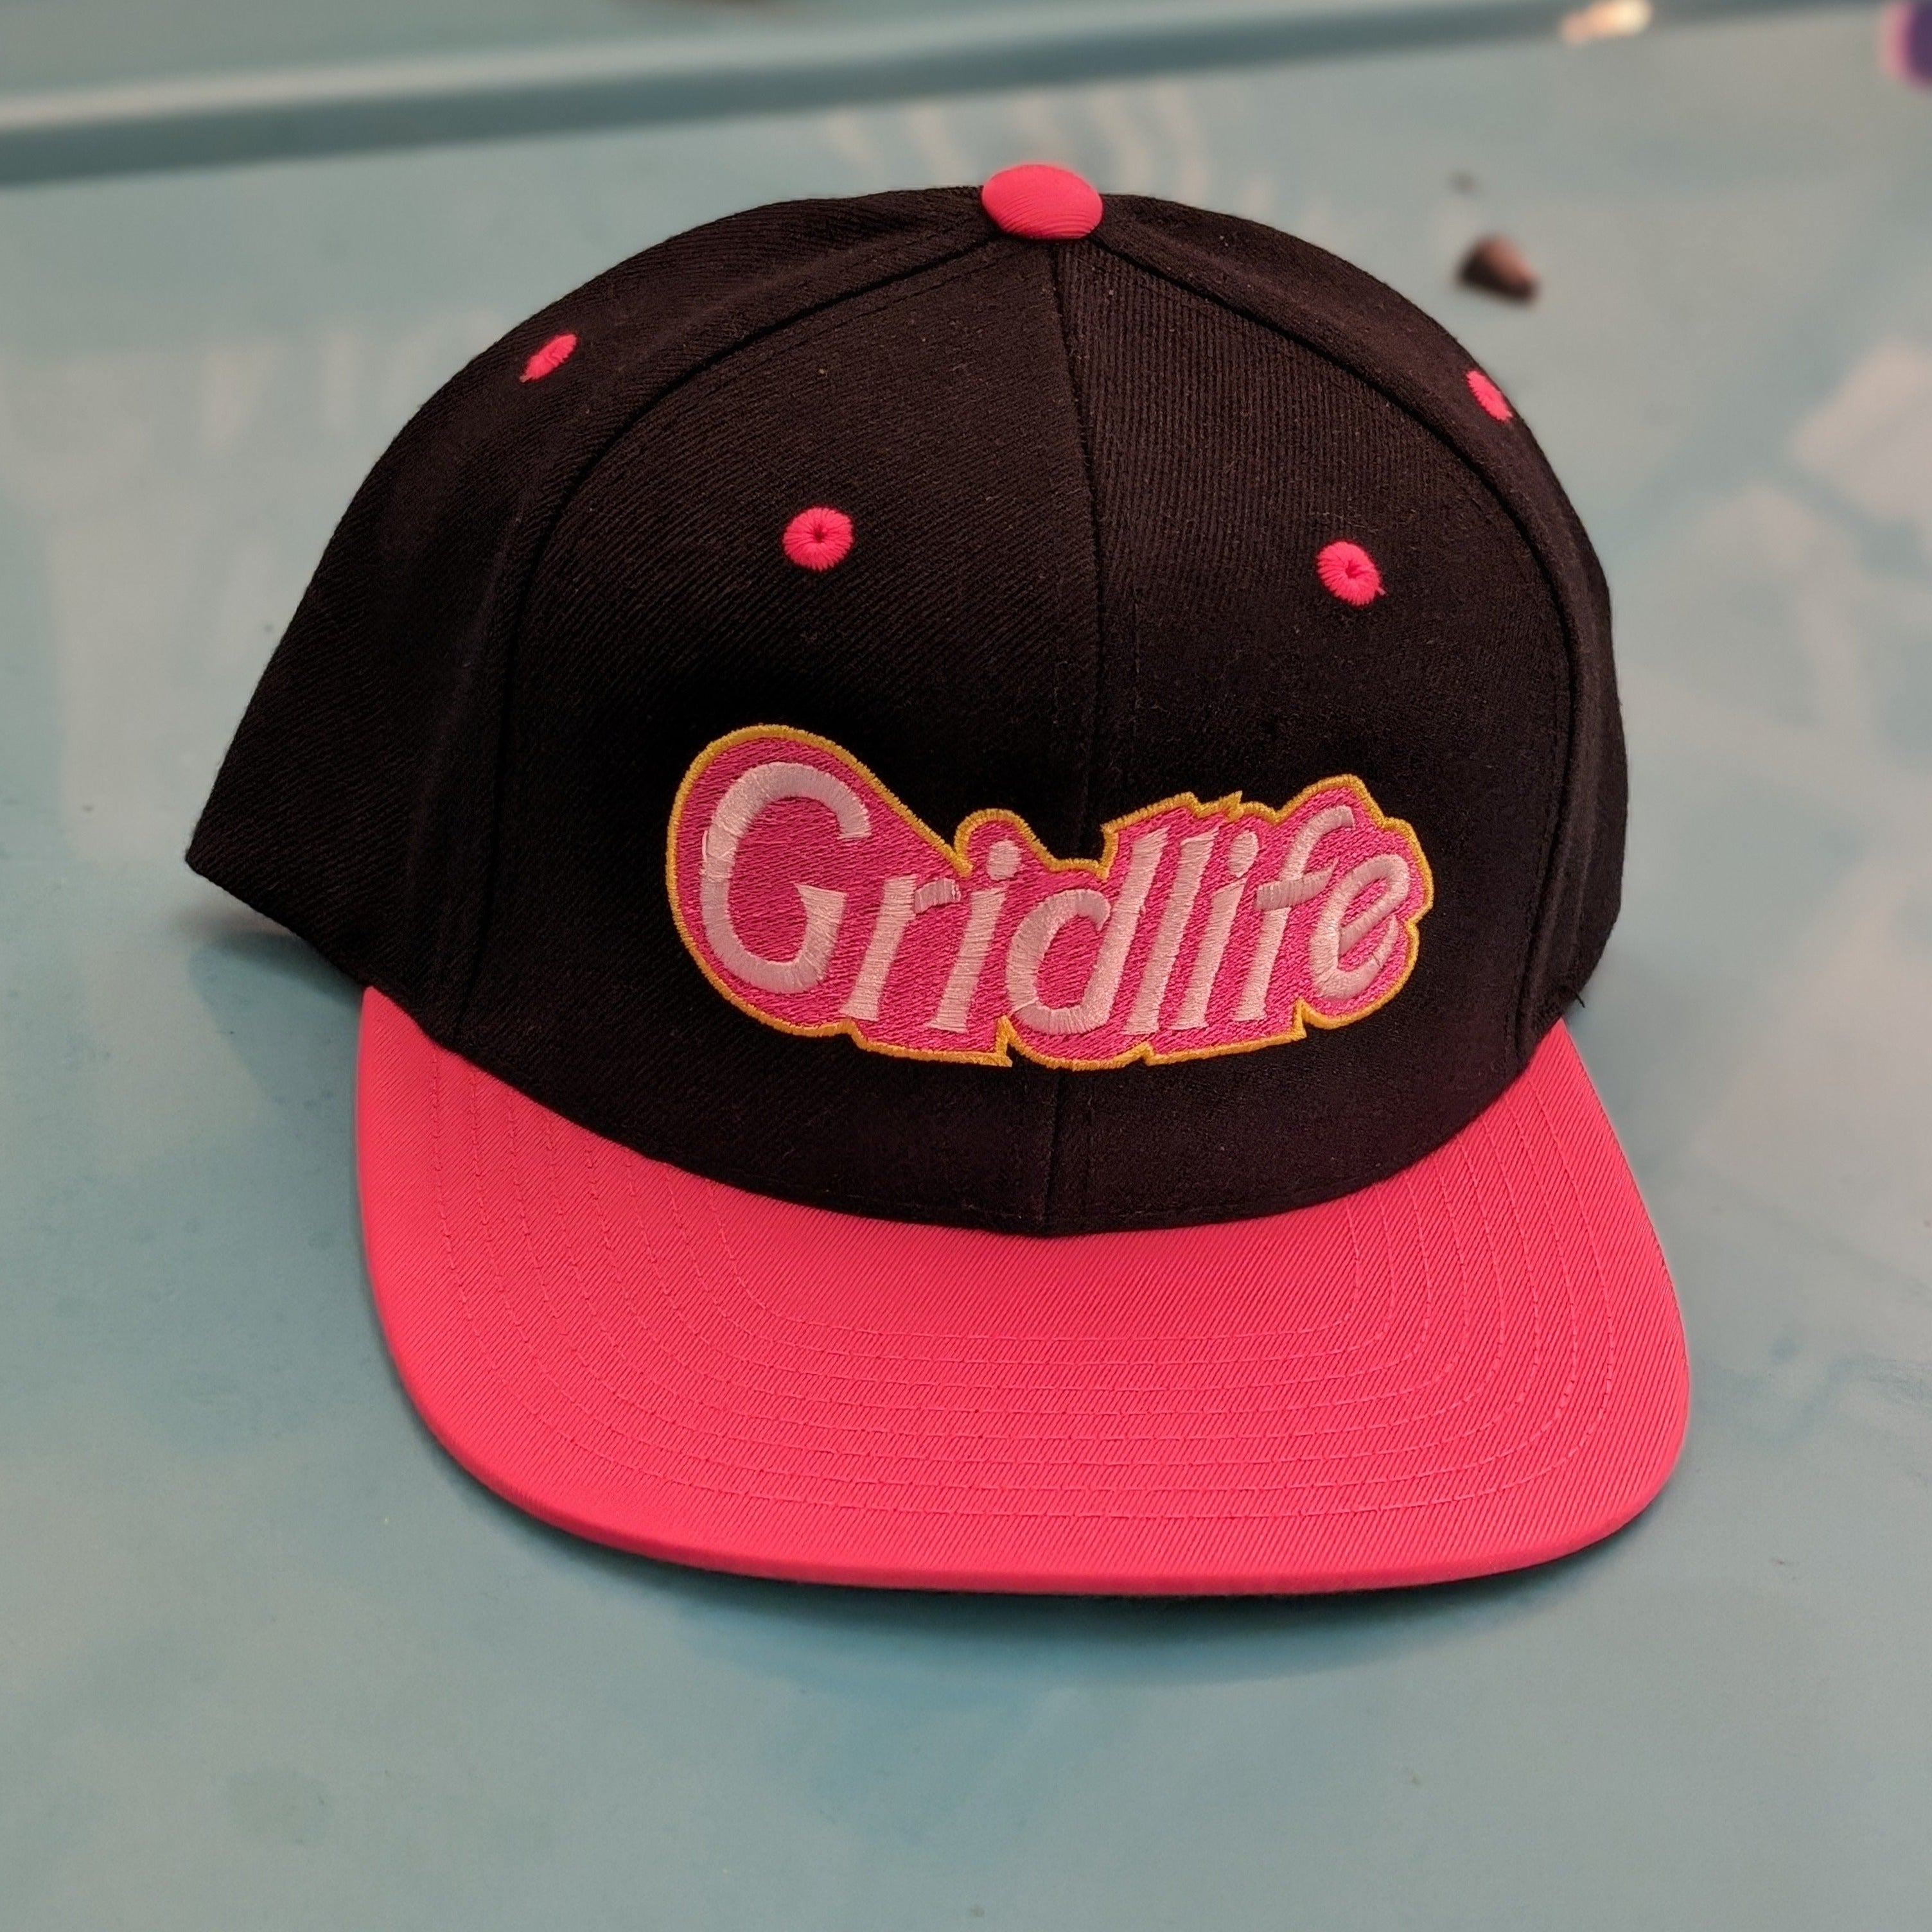 GRIDLIFE pink doll logo hat on the hood of kei van